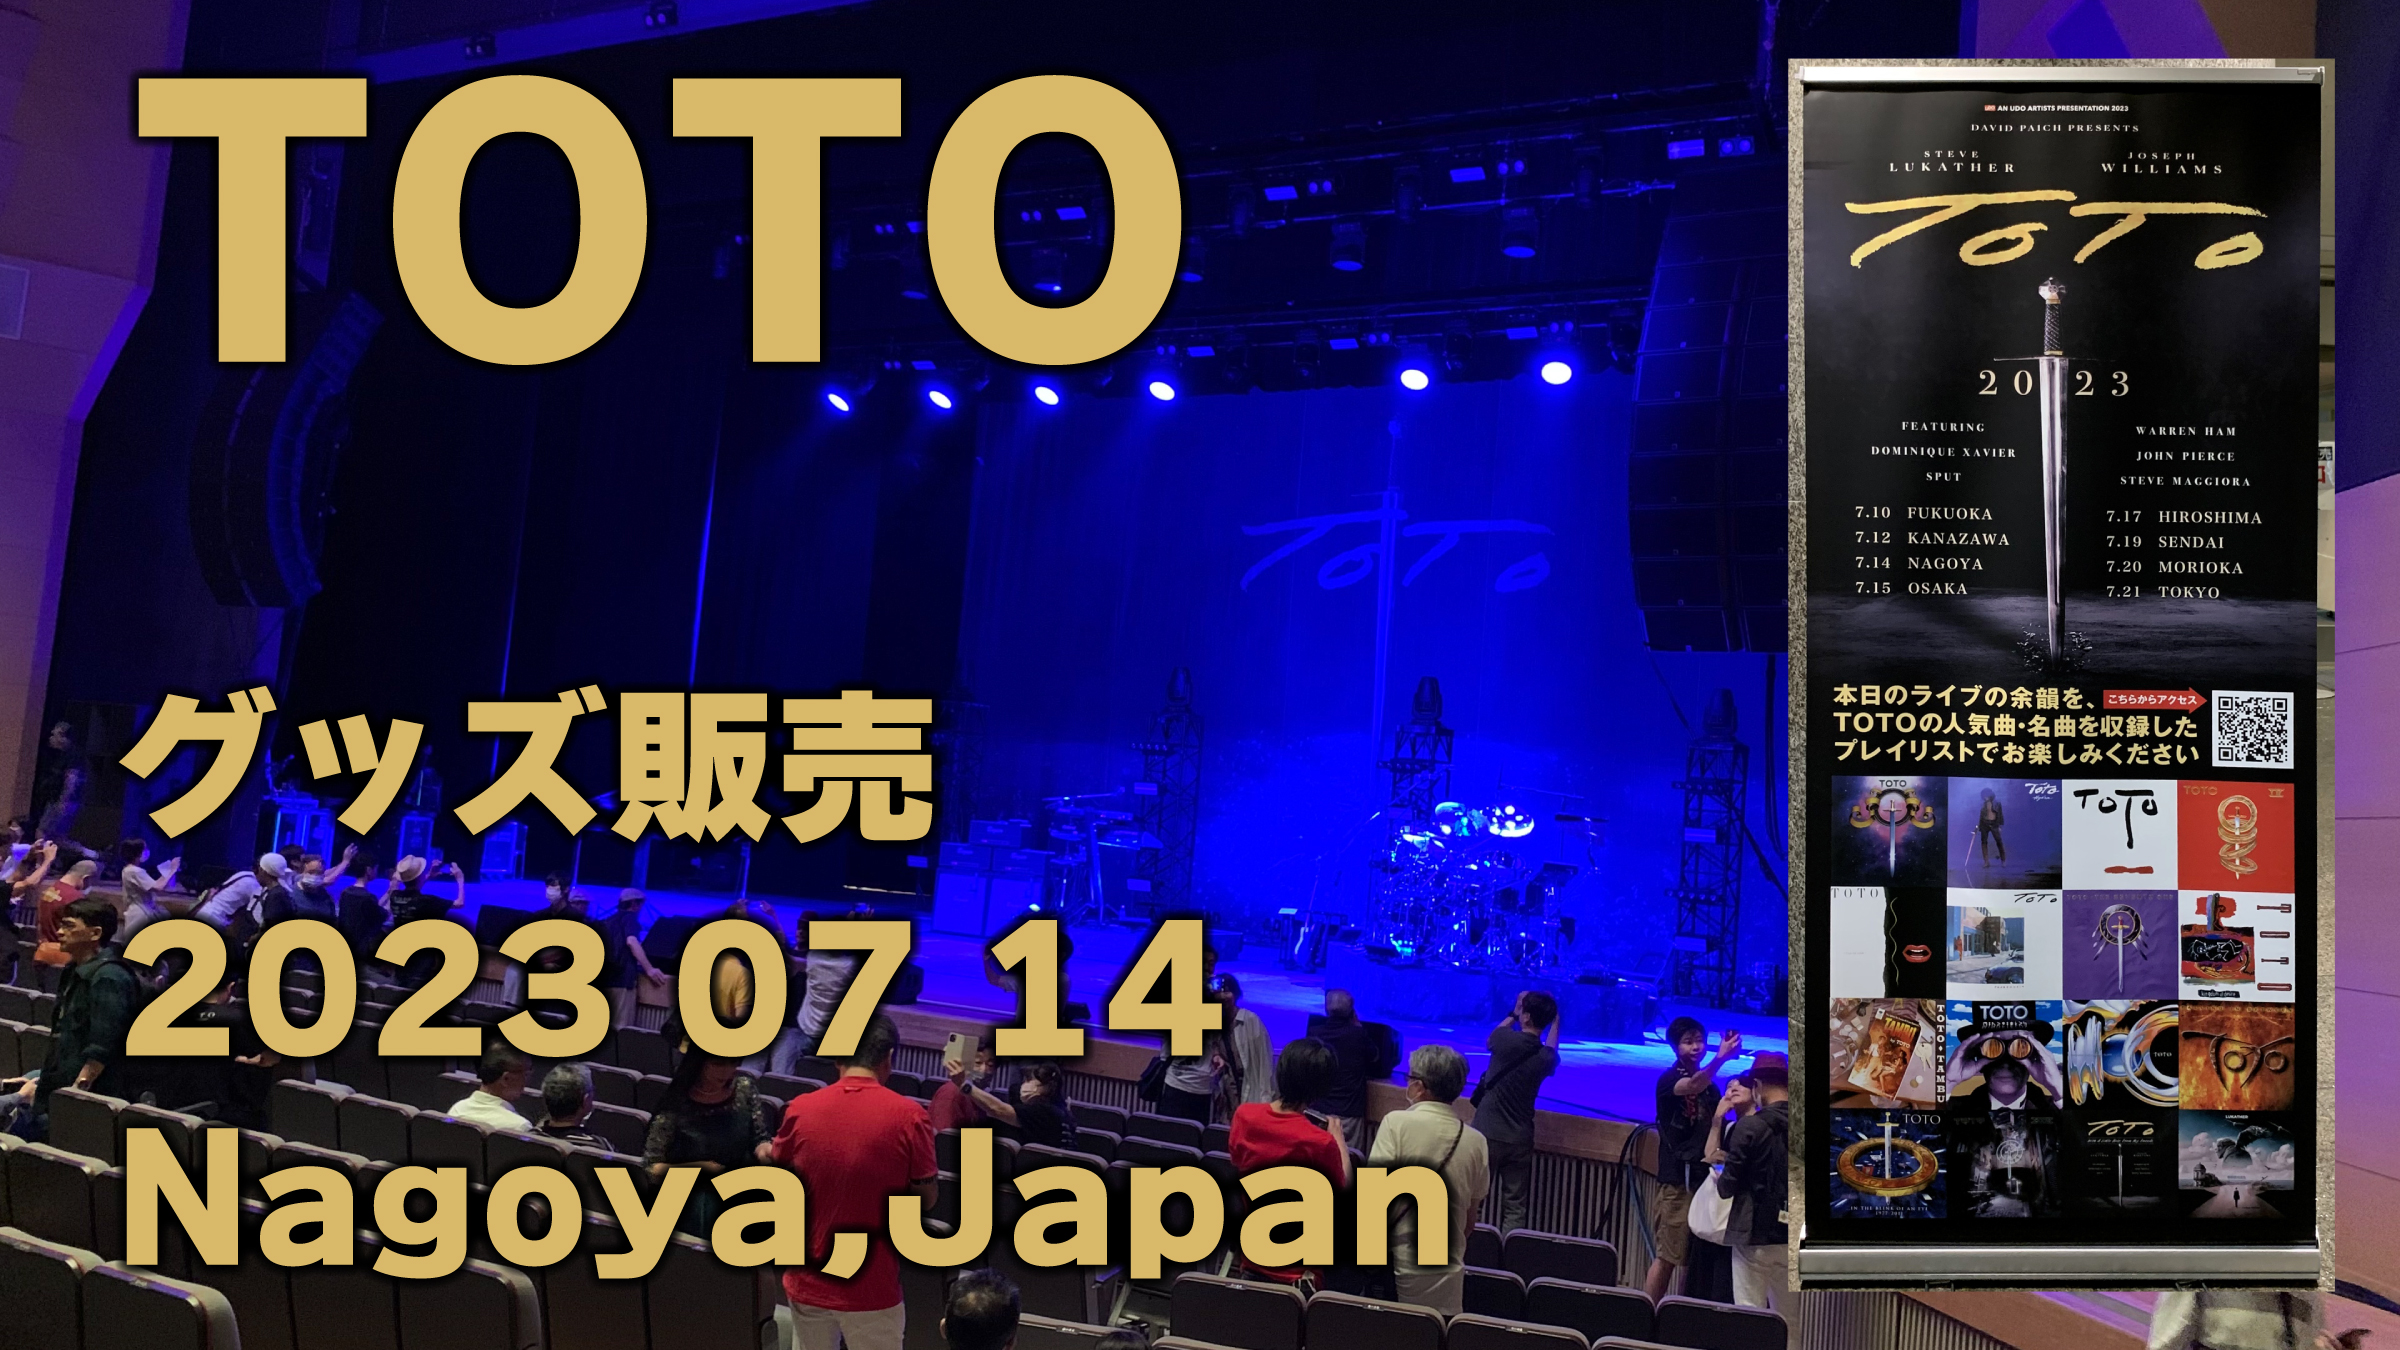 多分どうでもイイ動画（笑） TOTO グッズ販売！ https://youtu.be/MIGpPfAck0Y #TOTO #DogzOfOzTour2023 #TOTOJapanTour2023 #Show3 #Nagoya #名古屋 #SteveLukather #JosephWilliams